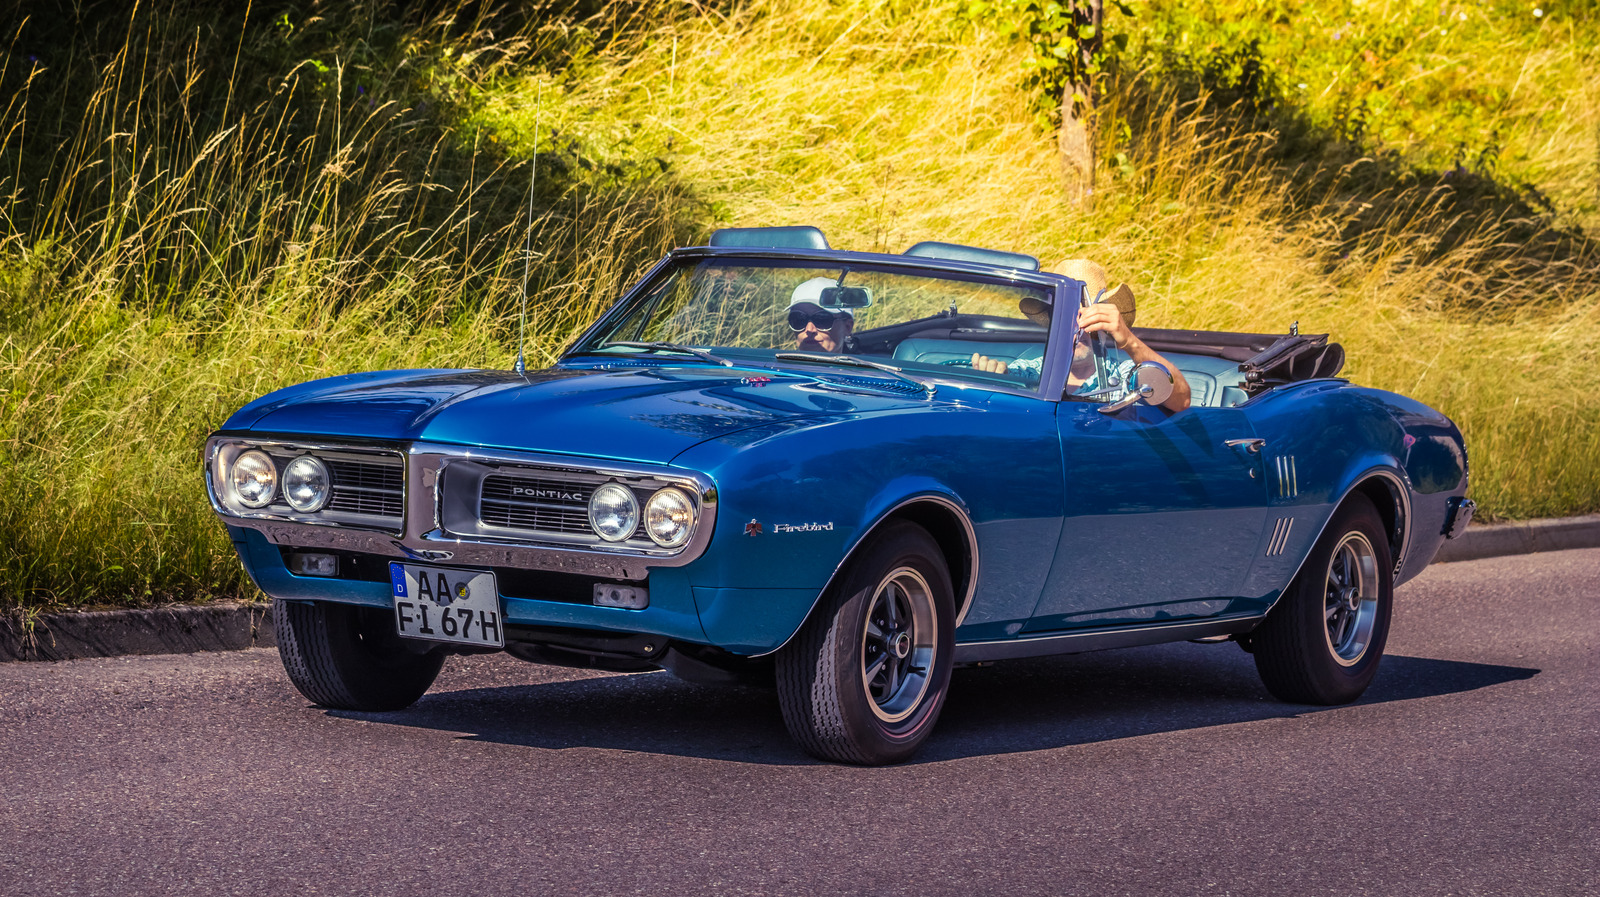 Esto es lo que convirtió al Pontiac Firebird de 1967 en un formidable competidor del Ford Mustang